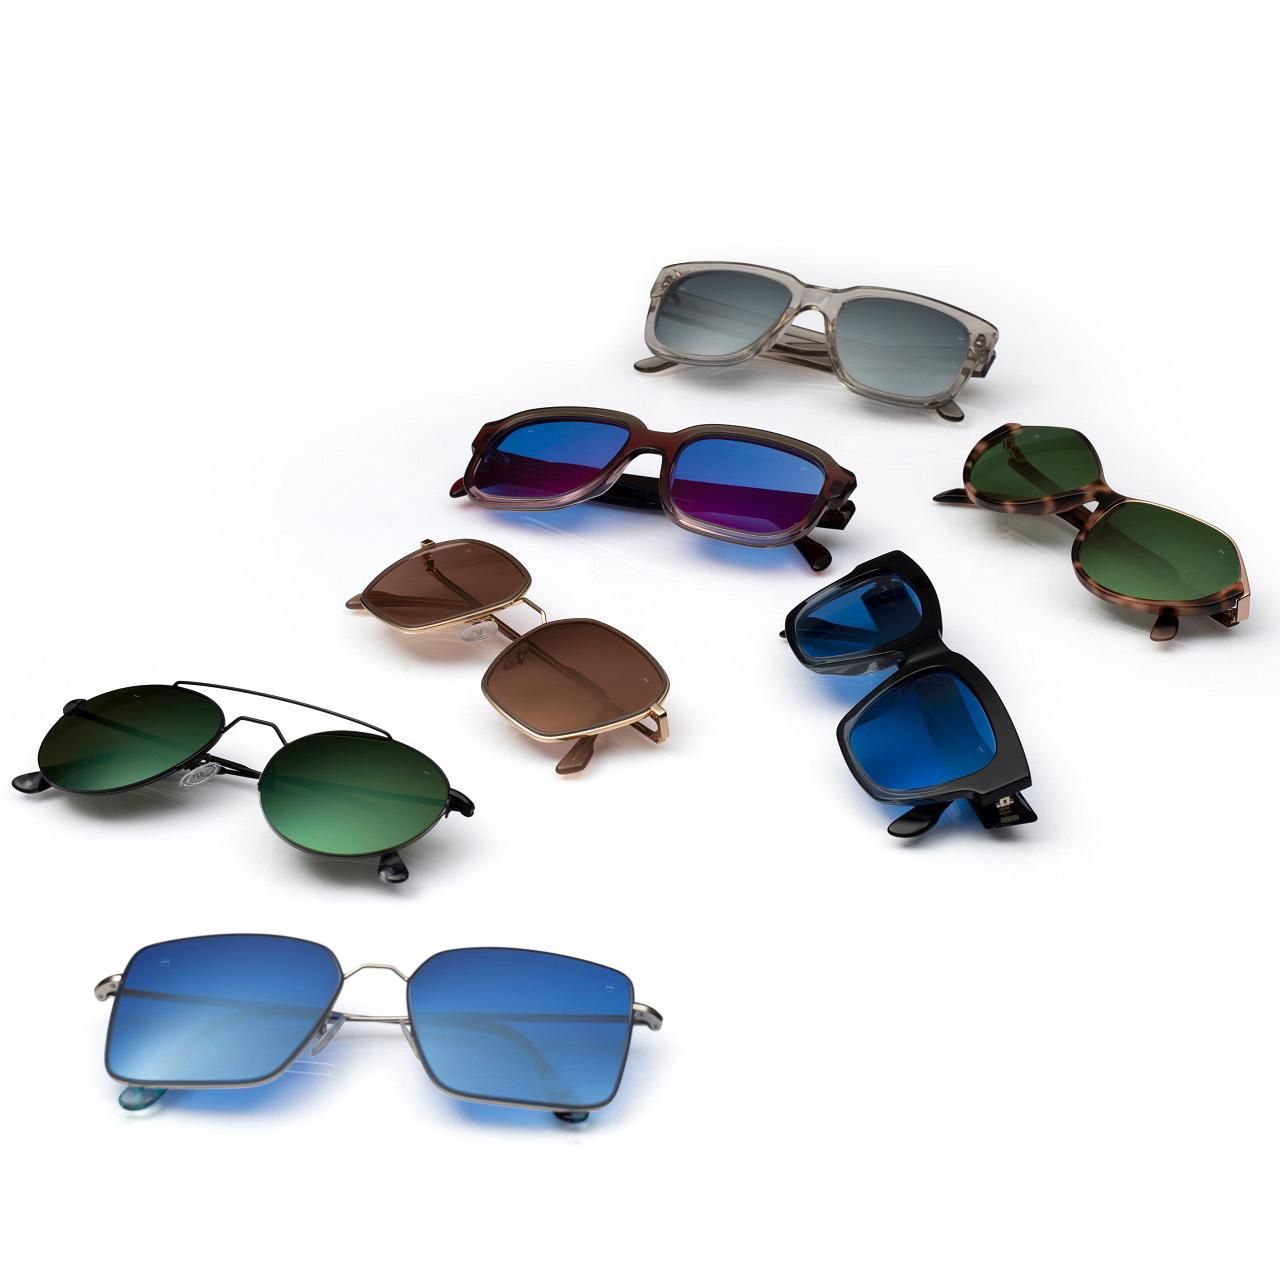 Die ZEISS PhotoFusion X Brillengläser sind praktisch, stilvoll und modern.